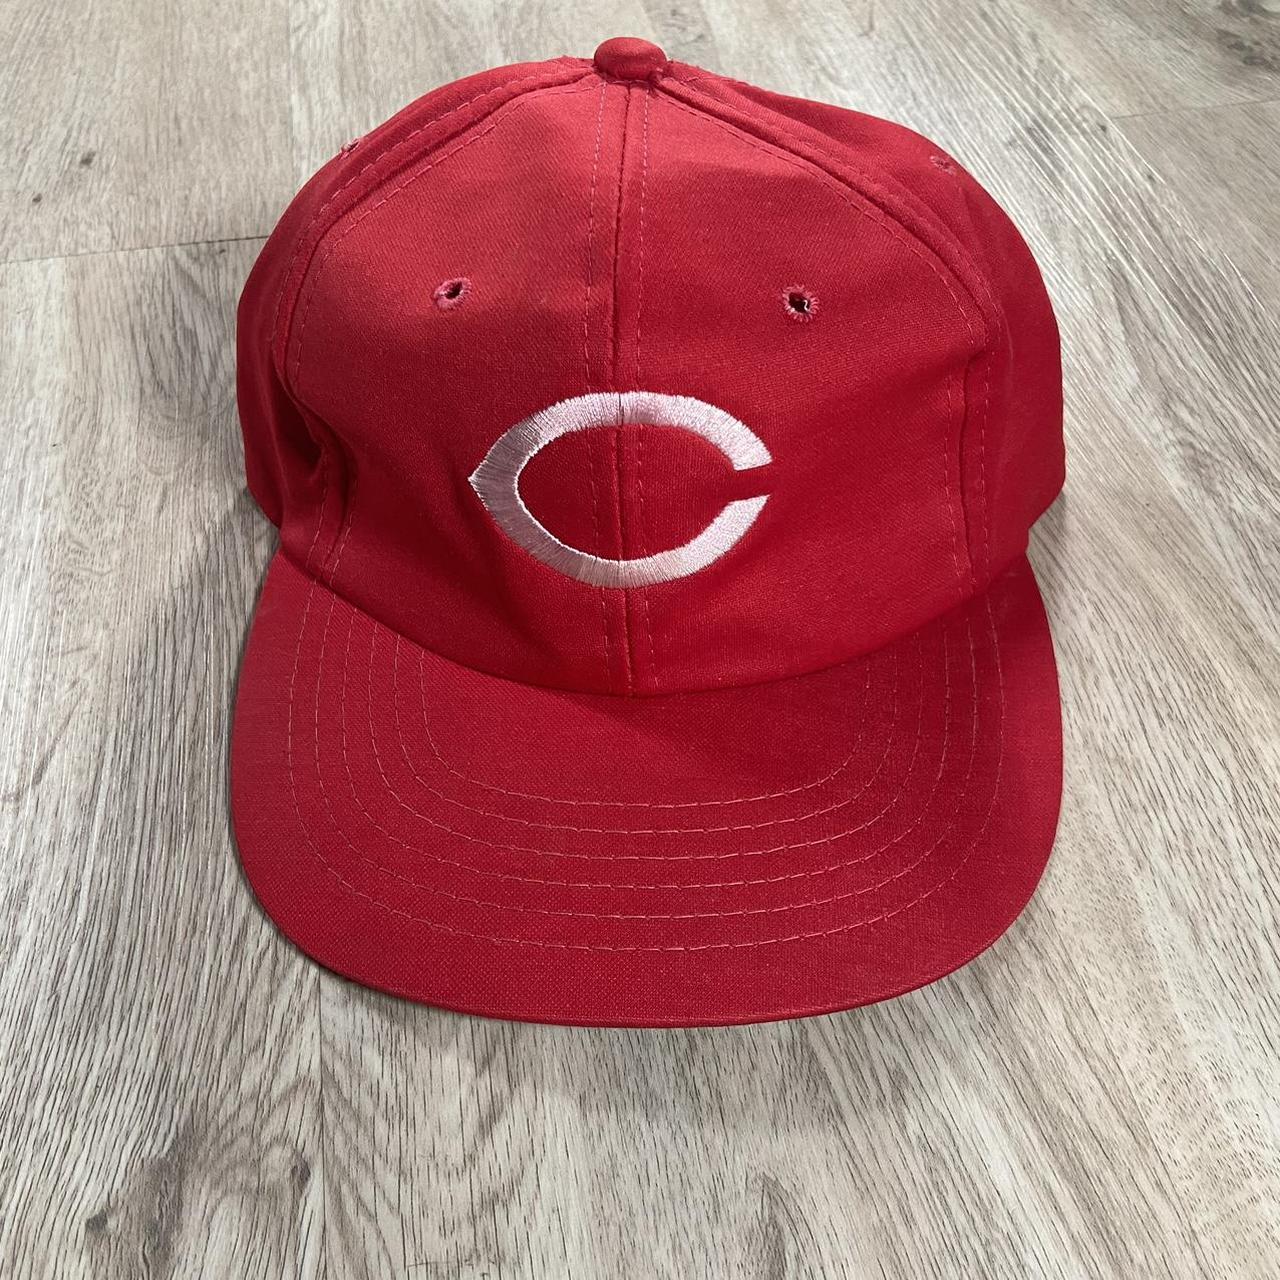 Sports Specialties Men's Hat - Red